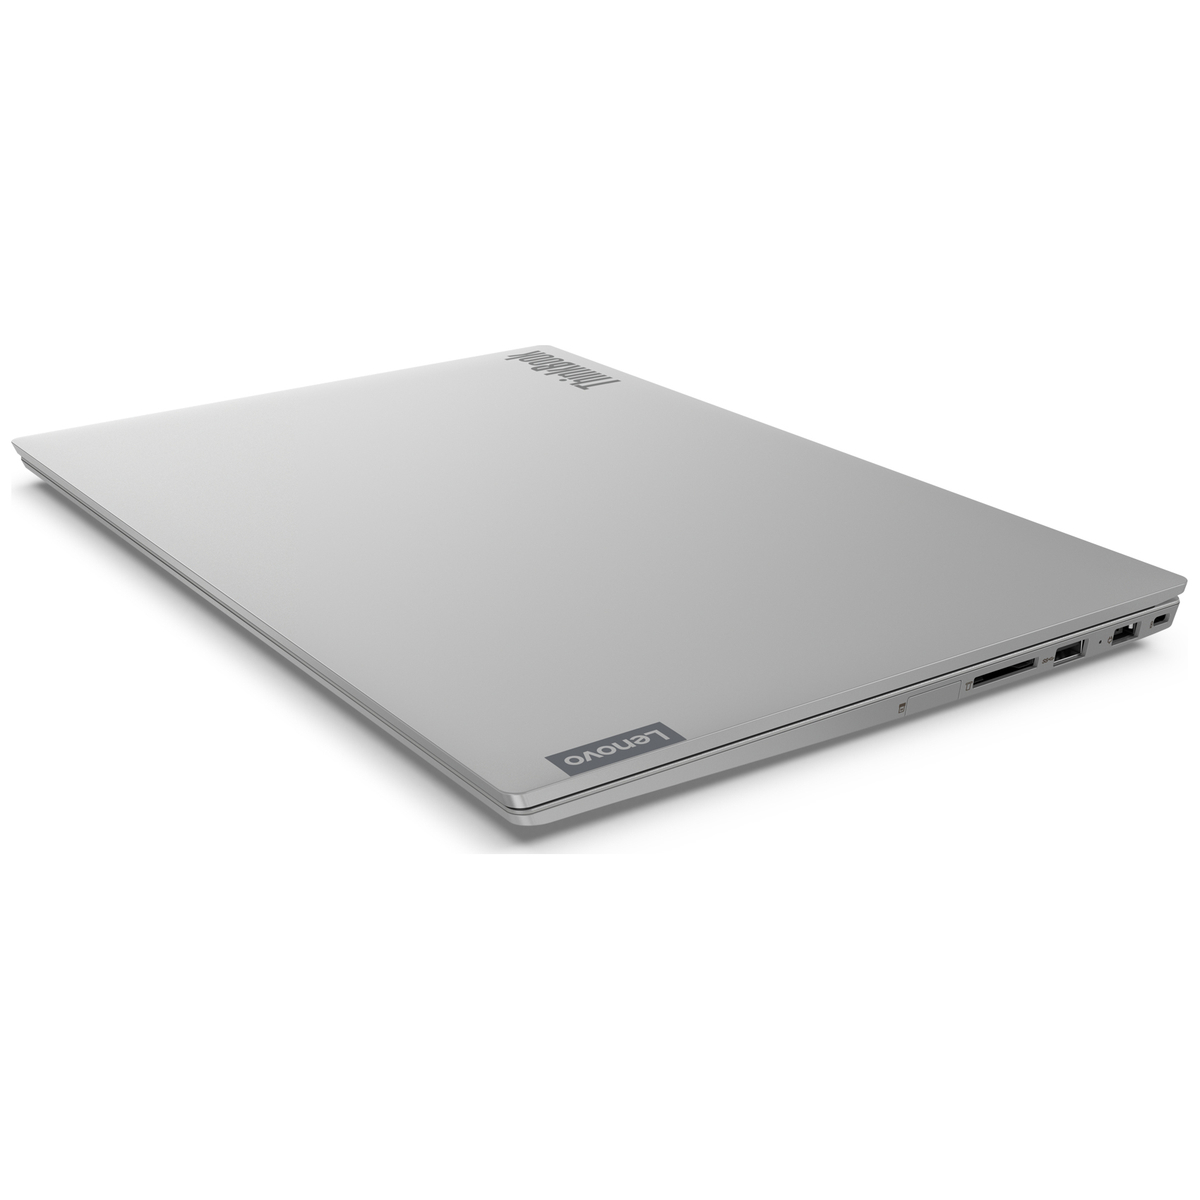 Ноутбук Lenovo ThinkBook 15-IML 15.6" FHD(1920x1080)AG, I5-10210U, 8GB DDR4_2666, 256GB SSD, INTEGRATED_GRAPHICS, WiFi, BT, no DVD, 3CELL, no OS, MINERAL GREY, 1,7kg, 1y c.i. 20RW004CRU 20RW004CRU #1